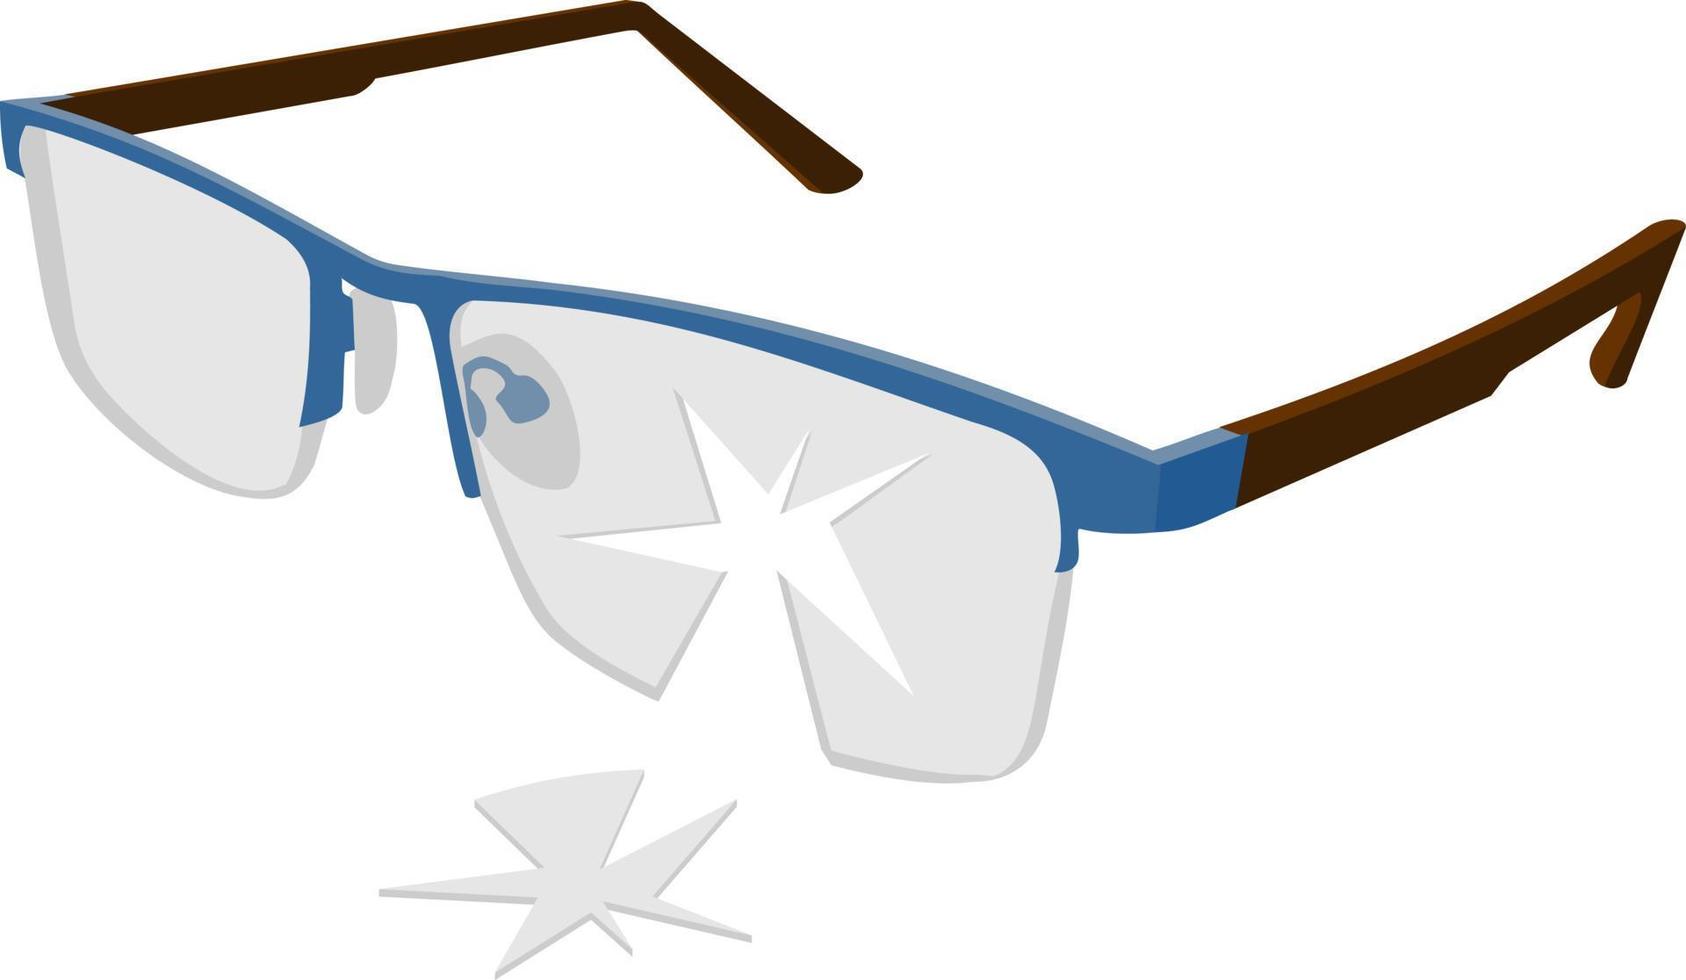 Broken glasses. Old break glasses. Flat vector illustration design